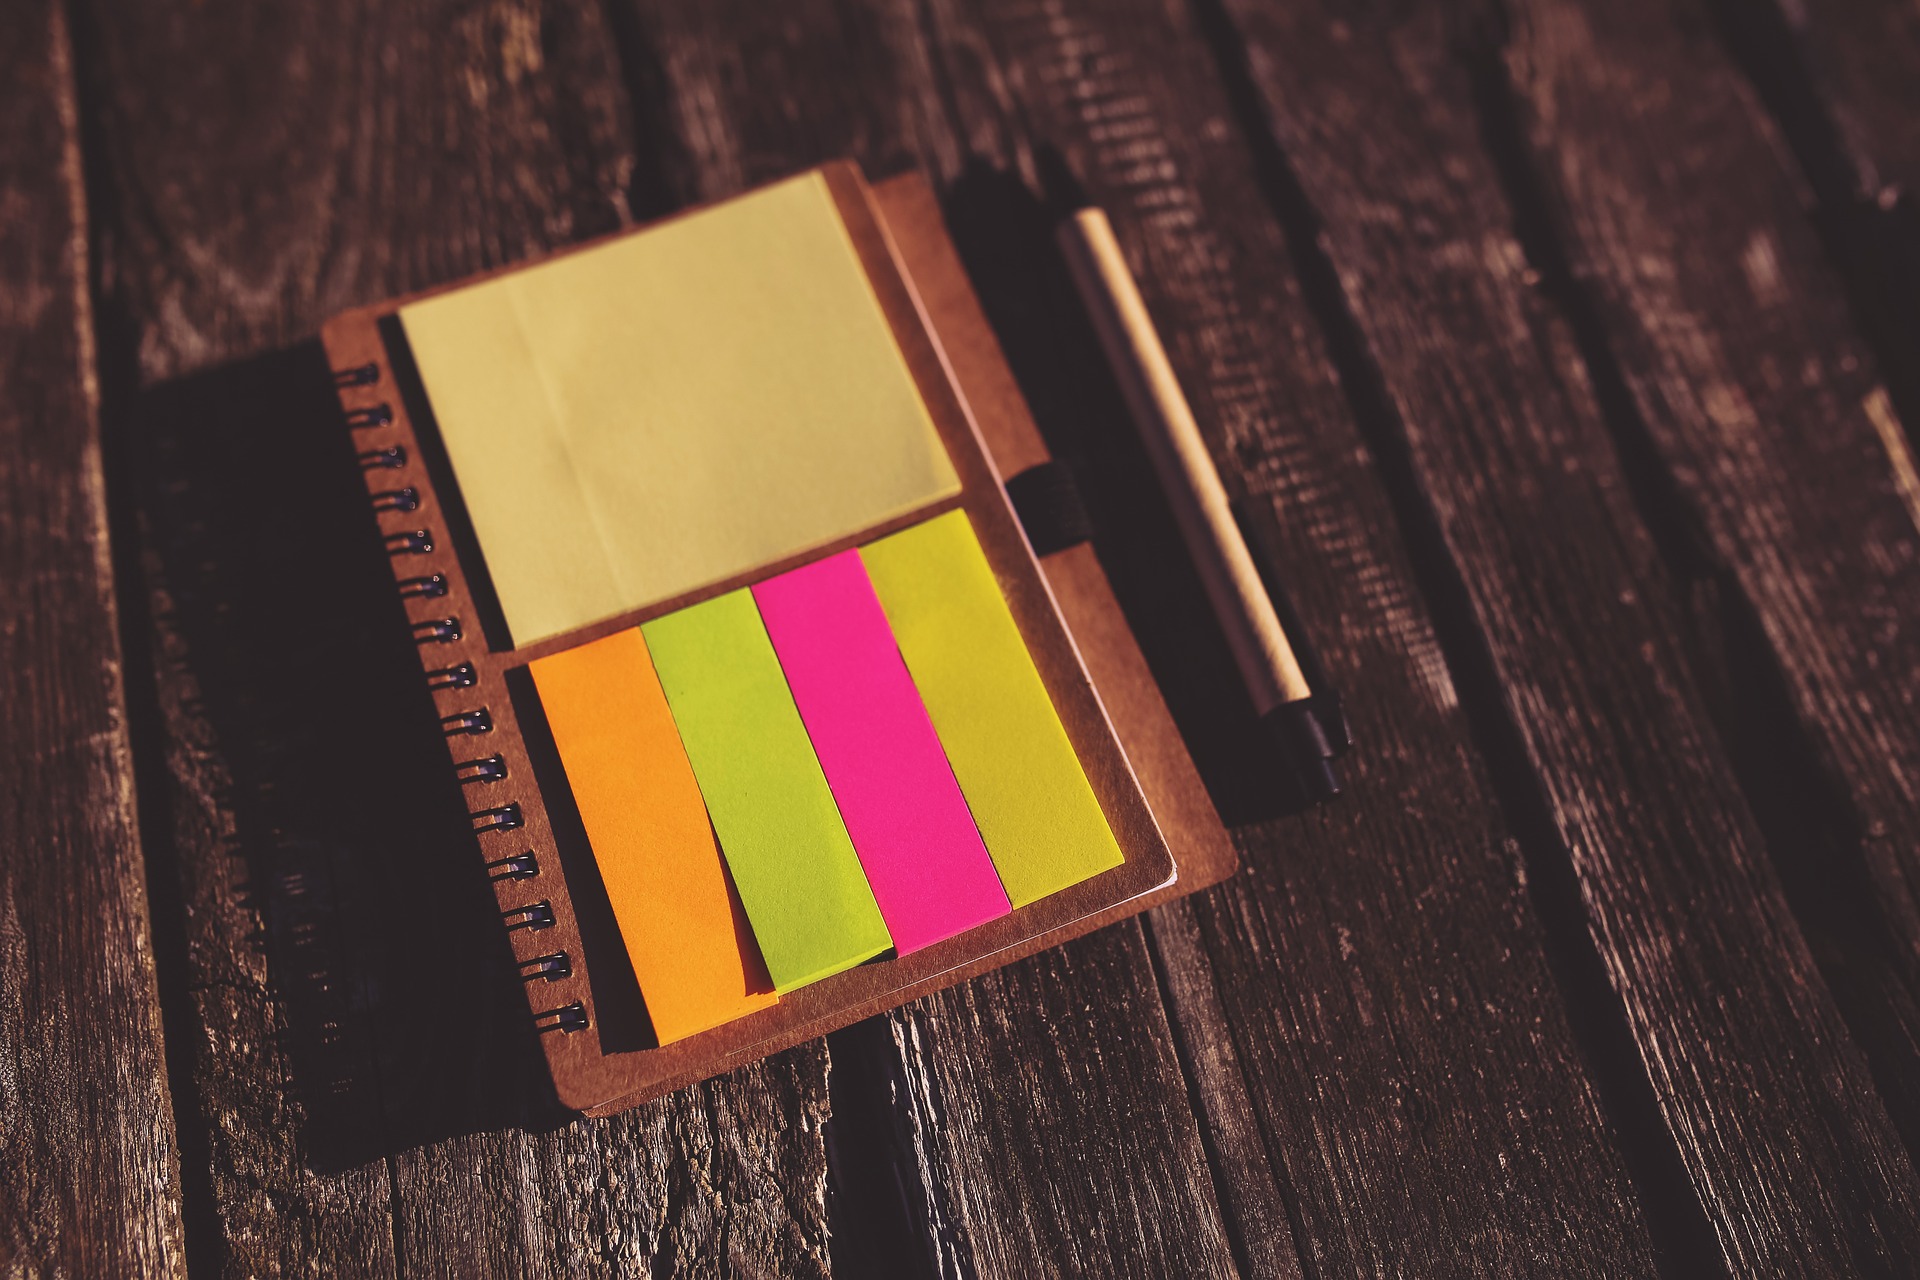 Sticky notes help analogue productivity